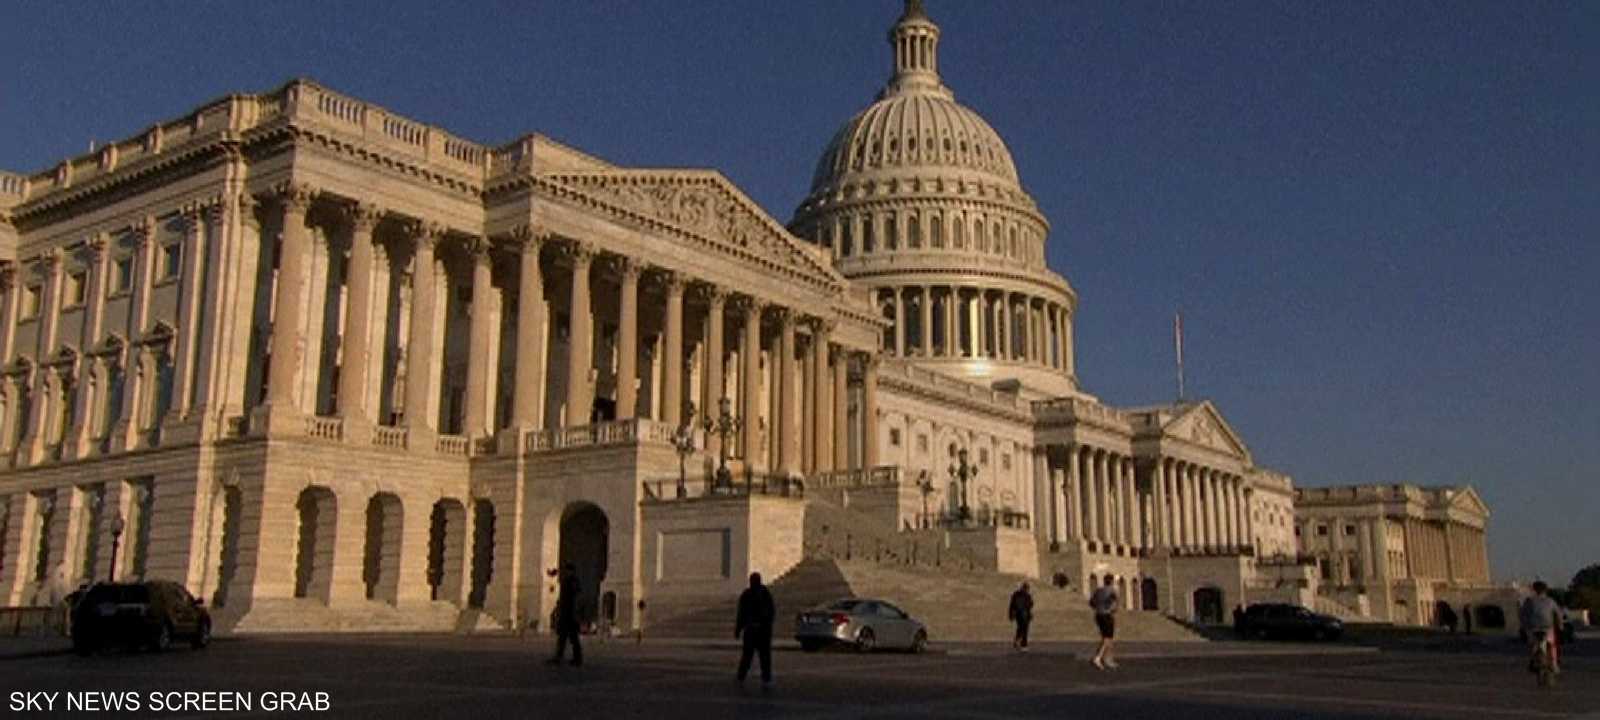 الحكومة تحركت خارج الكونغرس بذريعة أنها "لا تستطيع أن تنتظر" أكثر أمام عمليات التهرب من الضرائب.